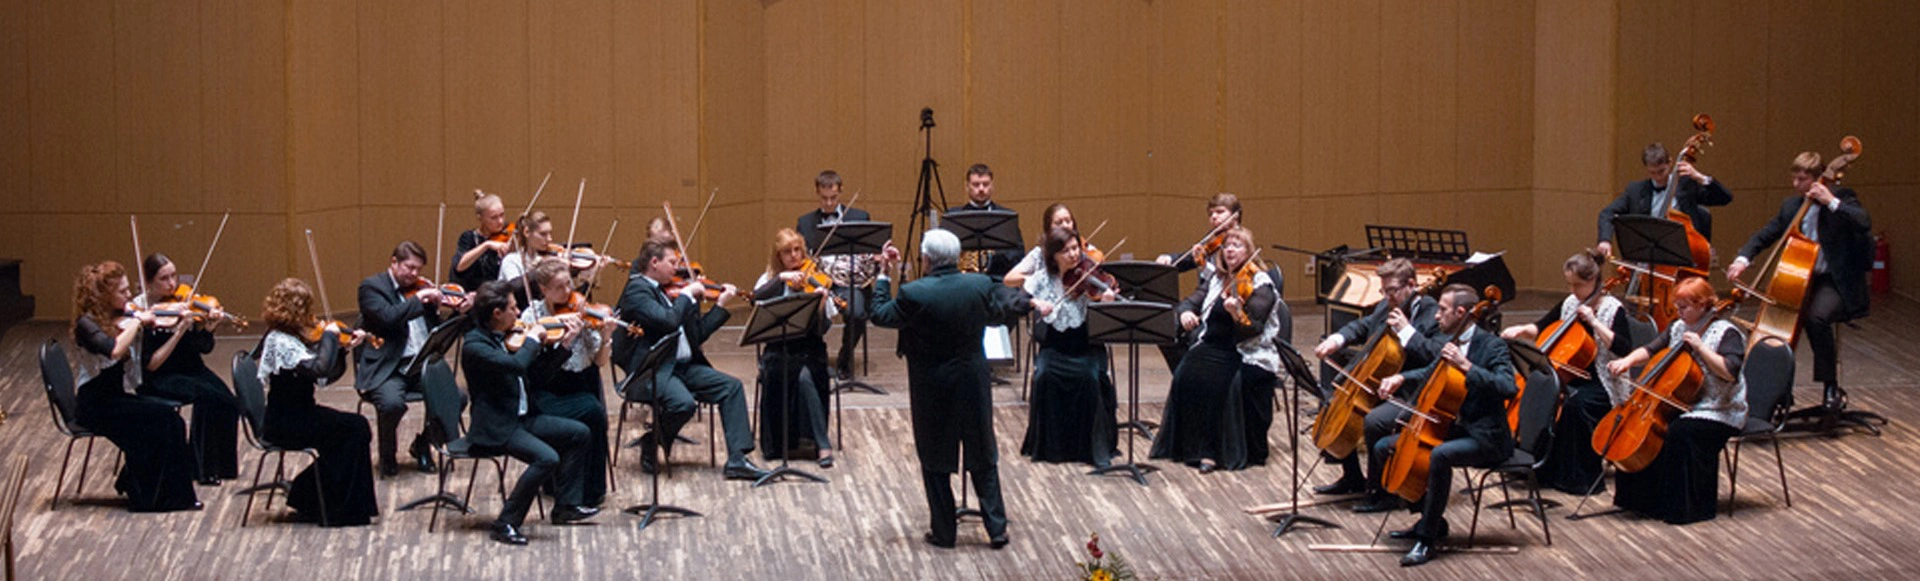 В Малом зале Филармонии имени Д.Д. Шостаковича выступит Красноярский камерный оркестр
